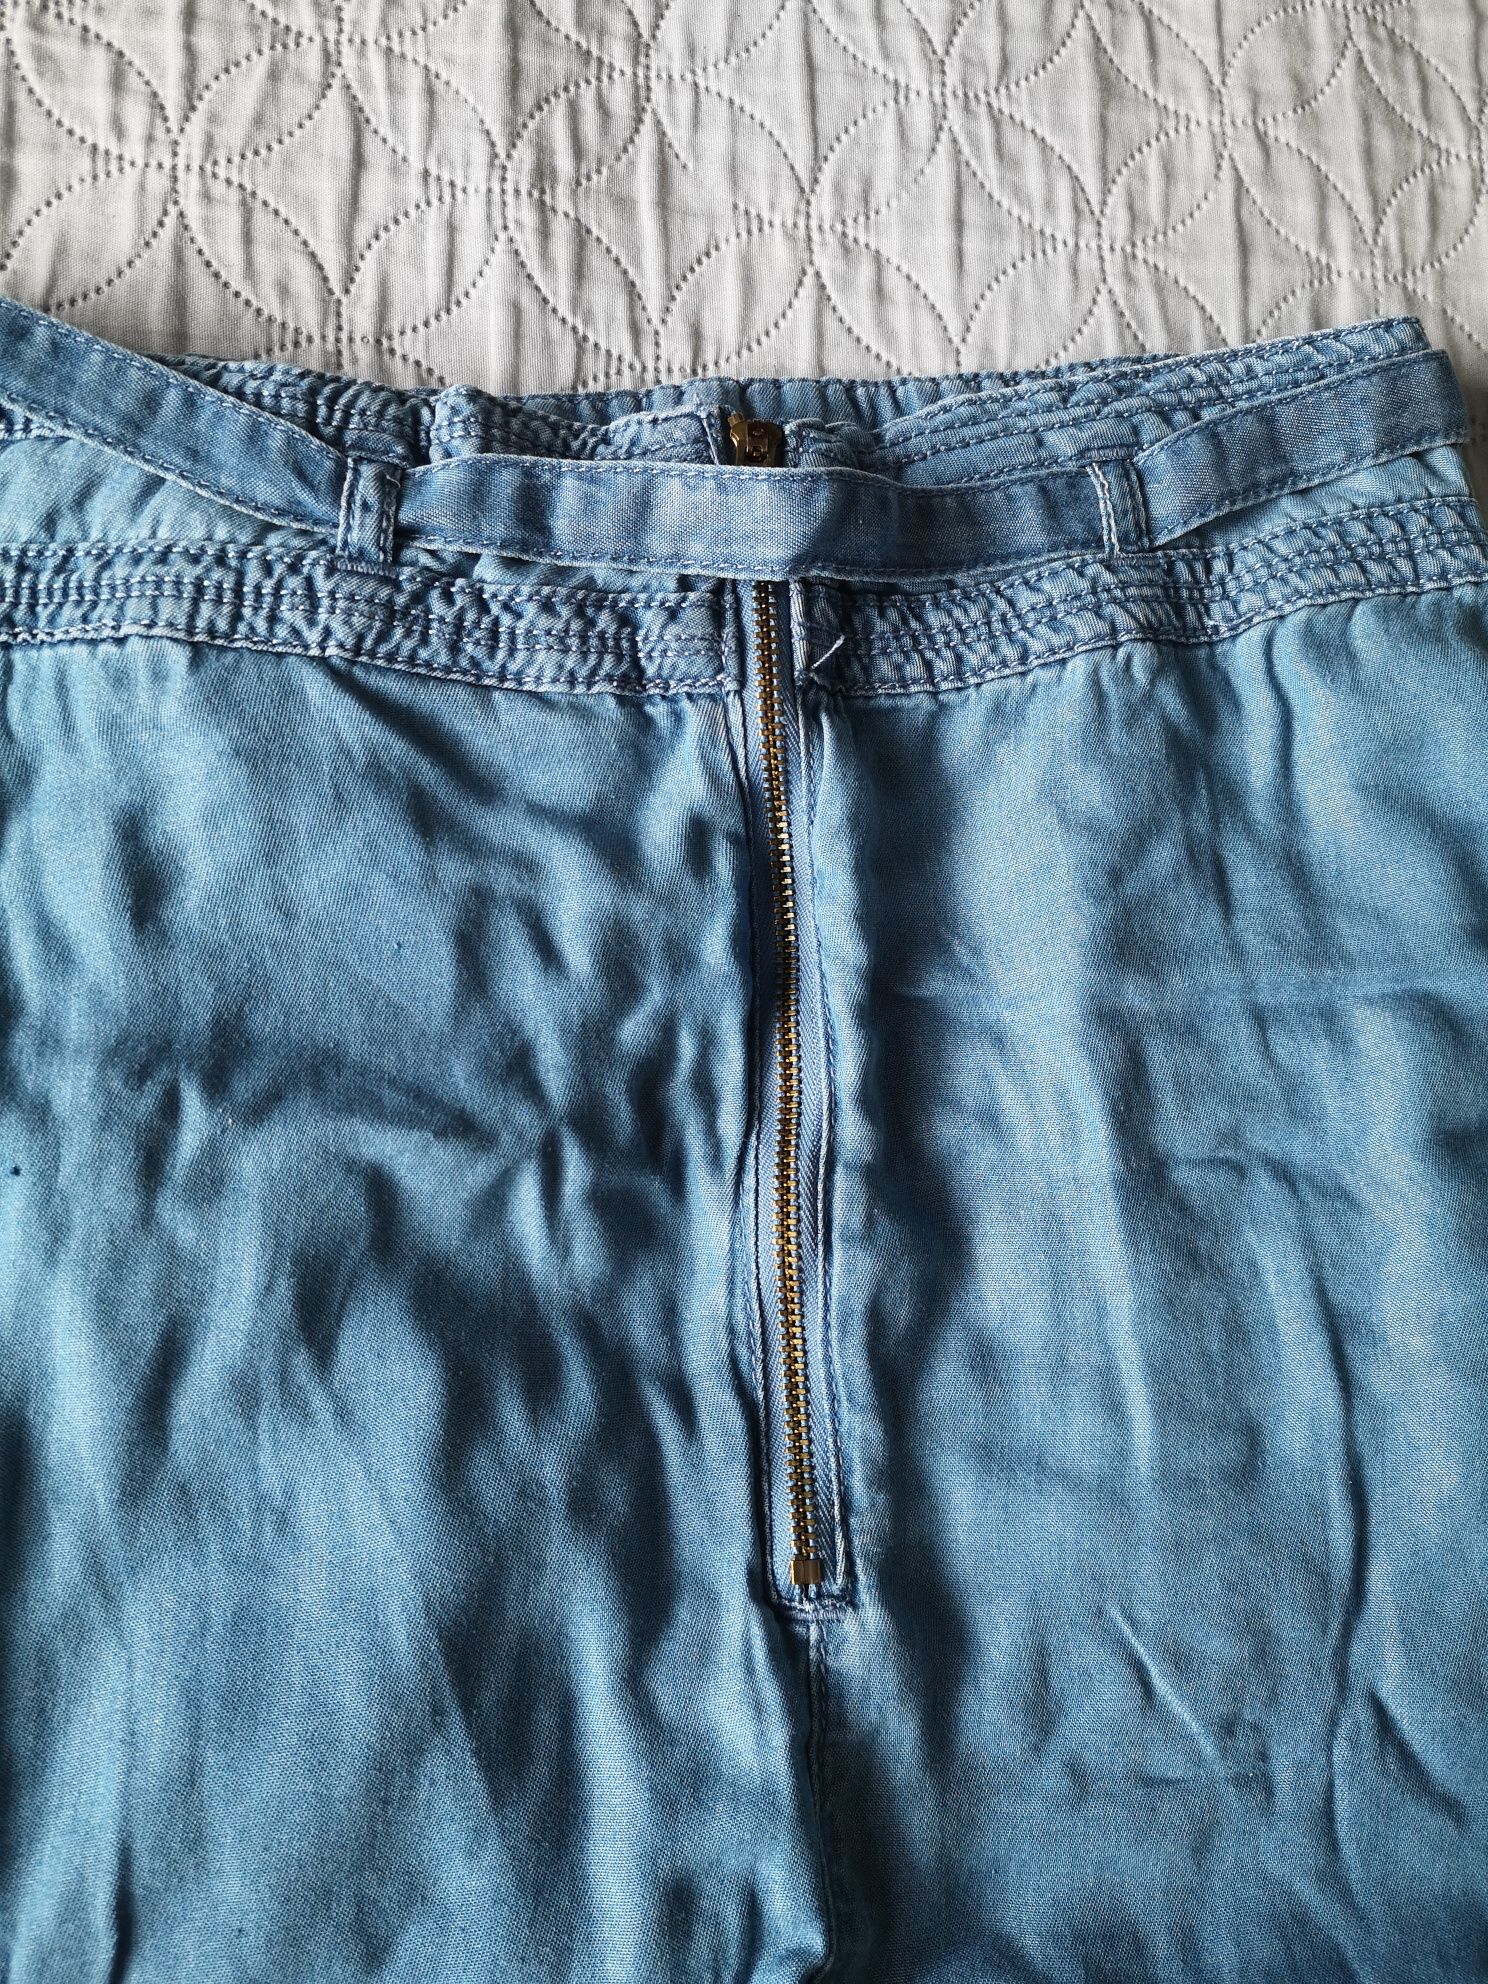 Spódnica jeansowa 3/4 Esmara rozm. 38